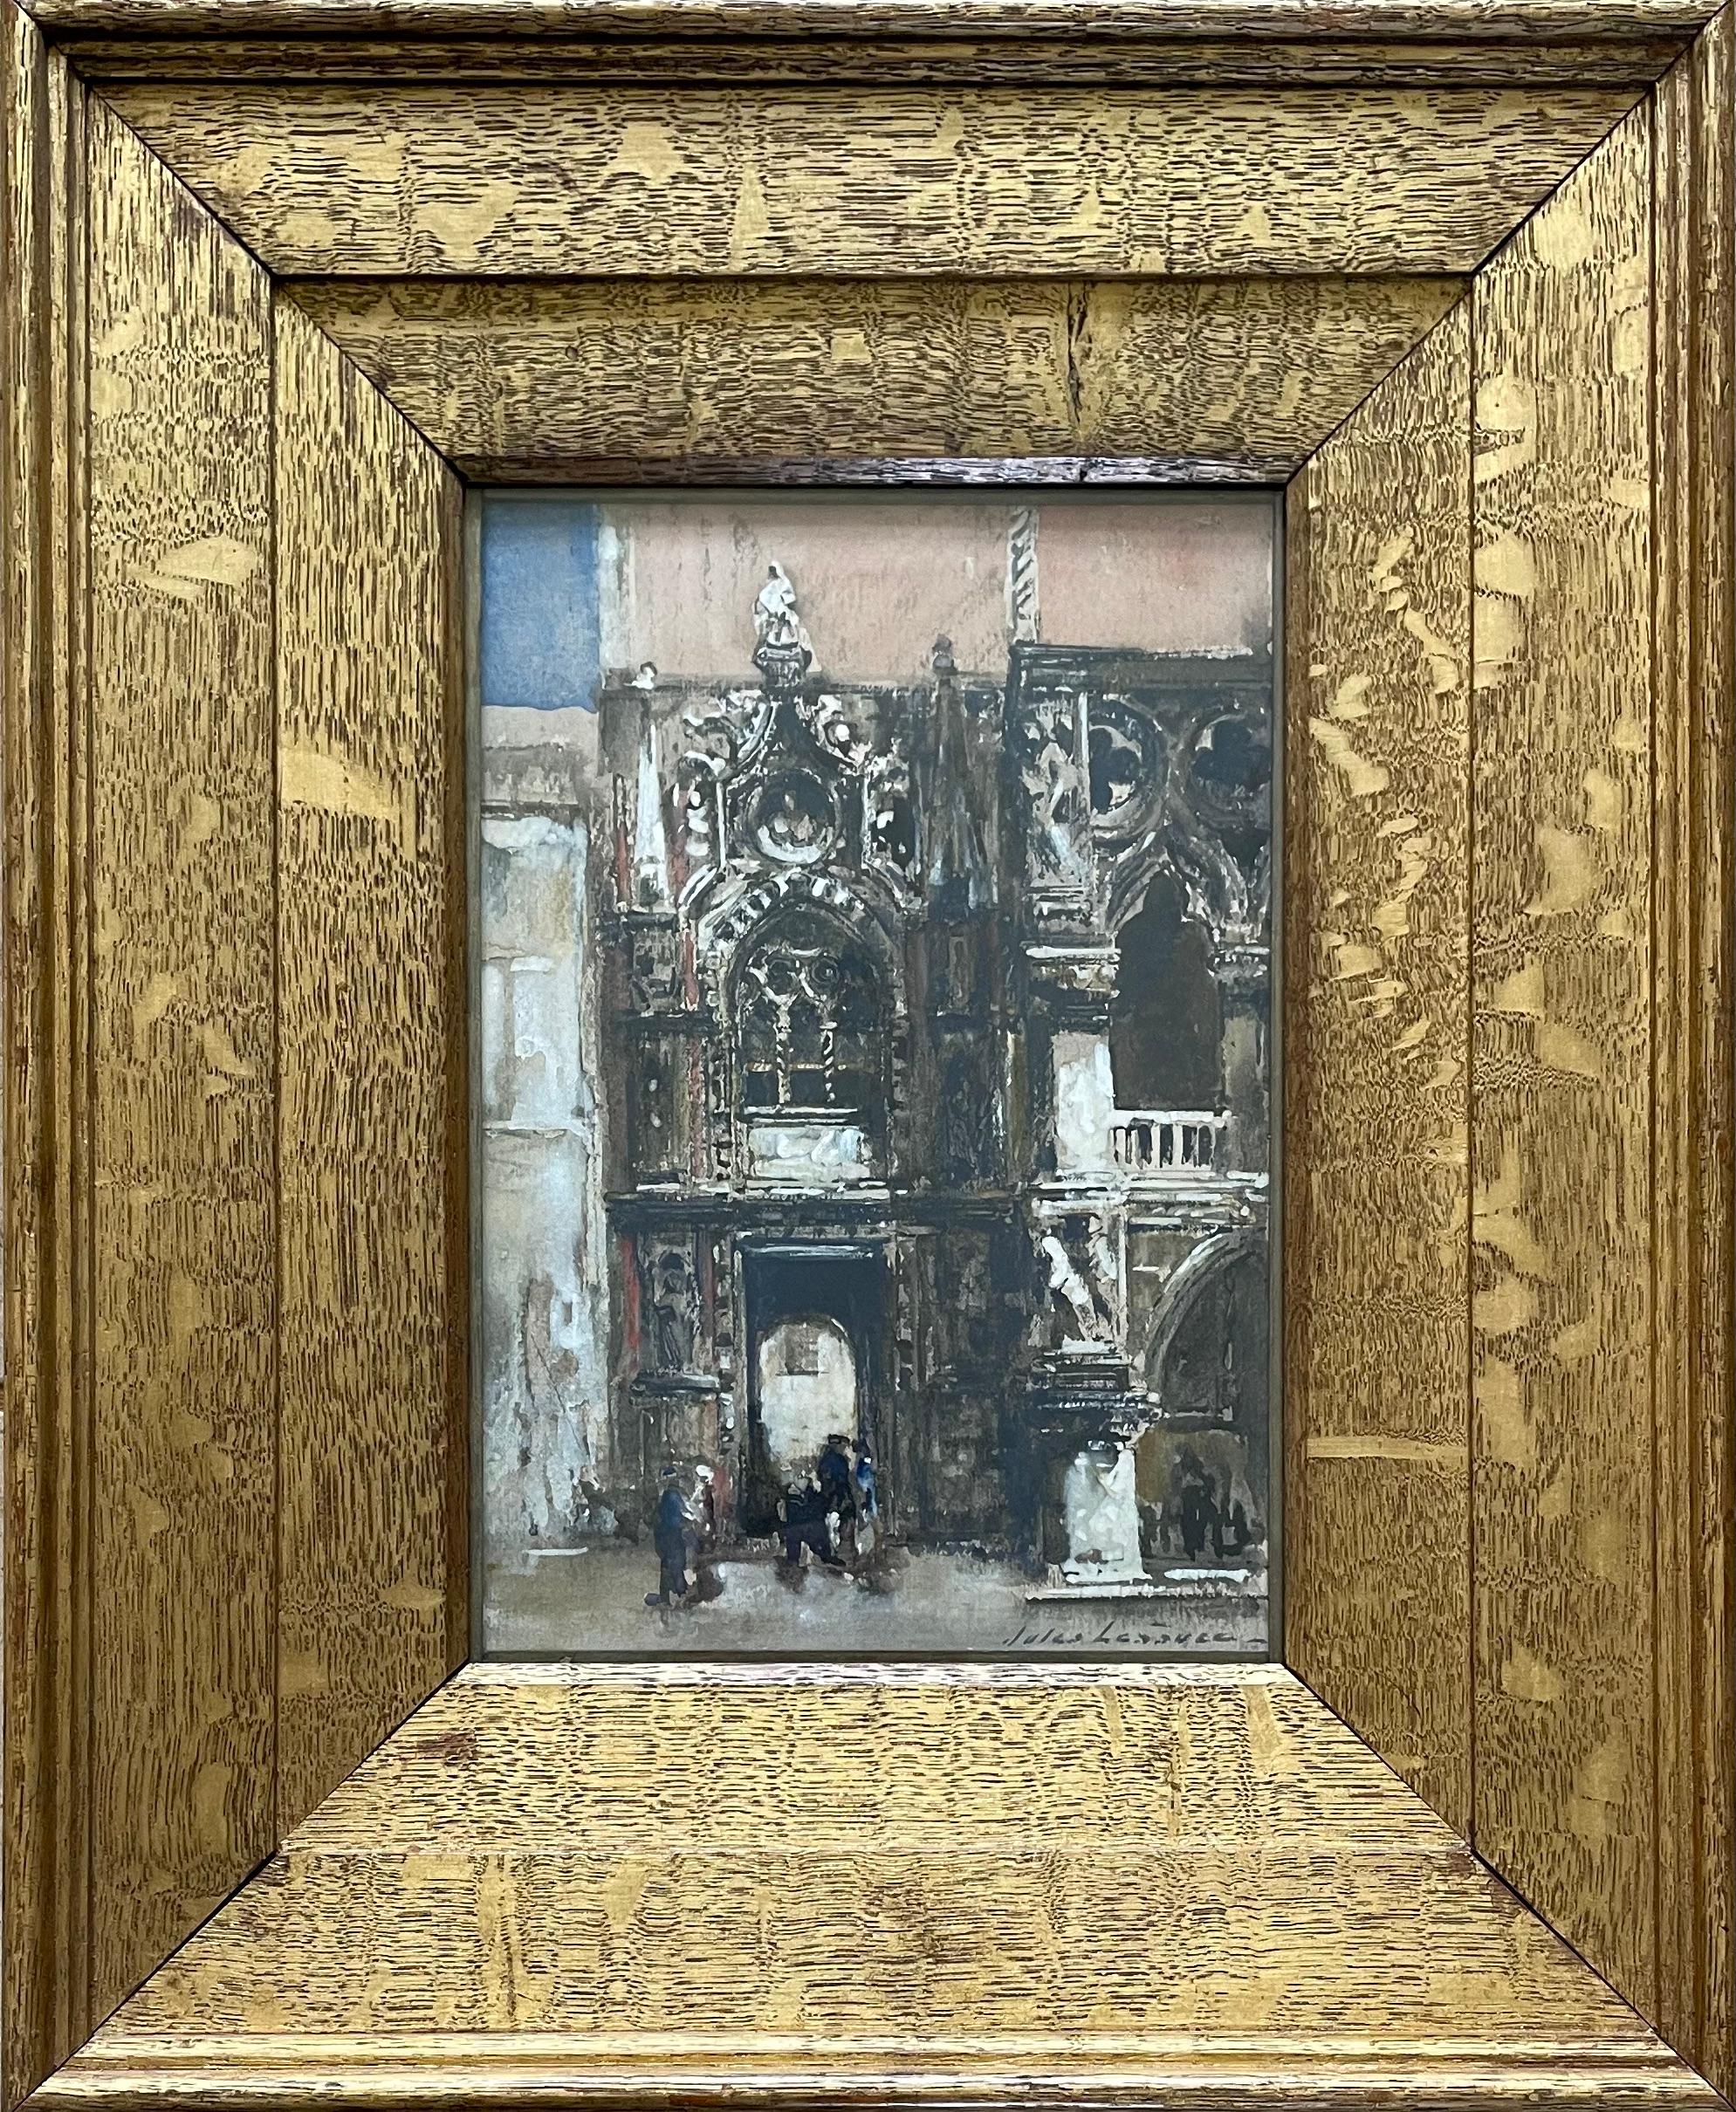 JULES LESSORE
(1849-1892)

Palais Ducal, Venise

Signé à gauche : Jules Lessore
Aquarelle
Encadré

24,5 par 17 cm, 9 ¾ par 6 ¾ in.
(format du cadre 44,5 x 36,5 cm, 17 ½ x 14 ½ in.)

Provenance :
Avec Duncan Miller Fine Art, Londres.

Jules Lessore